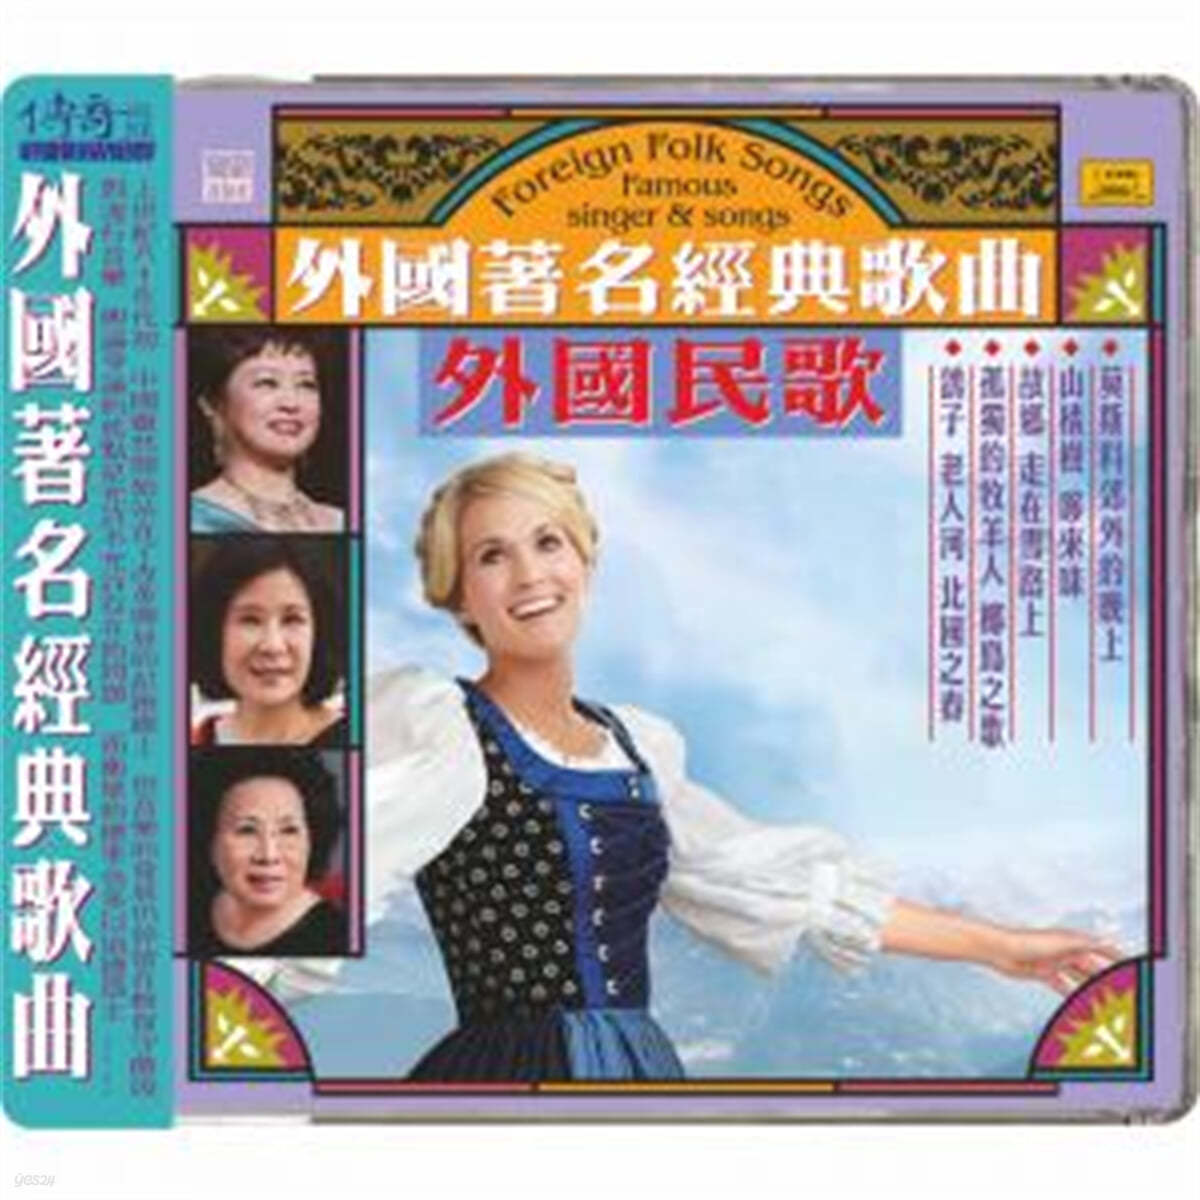 60-80년대 중국 본토의 유명 가수들이 노래한 다양한 나라의 번안가요 모음집 (Foreign Folk Songs : Famous Singer &amp; Songs) 